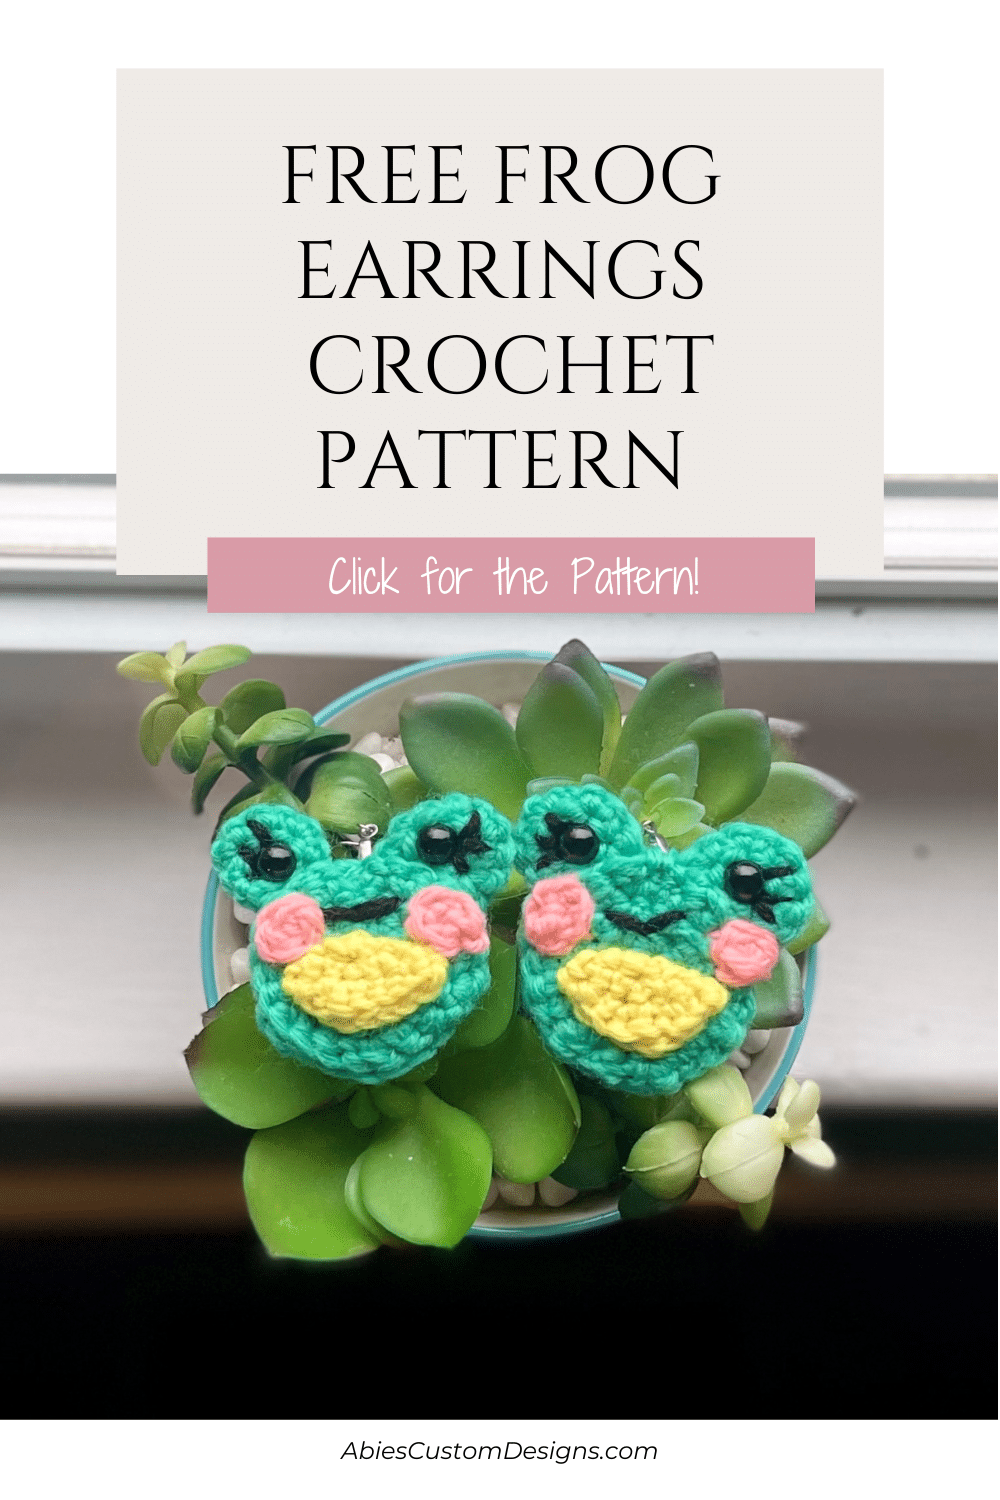 Free Frog Earrings Crochet Pattern